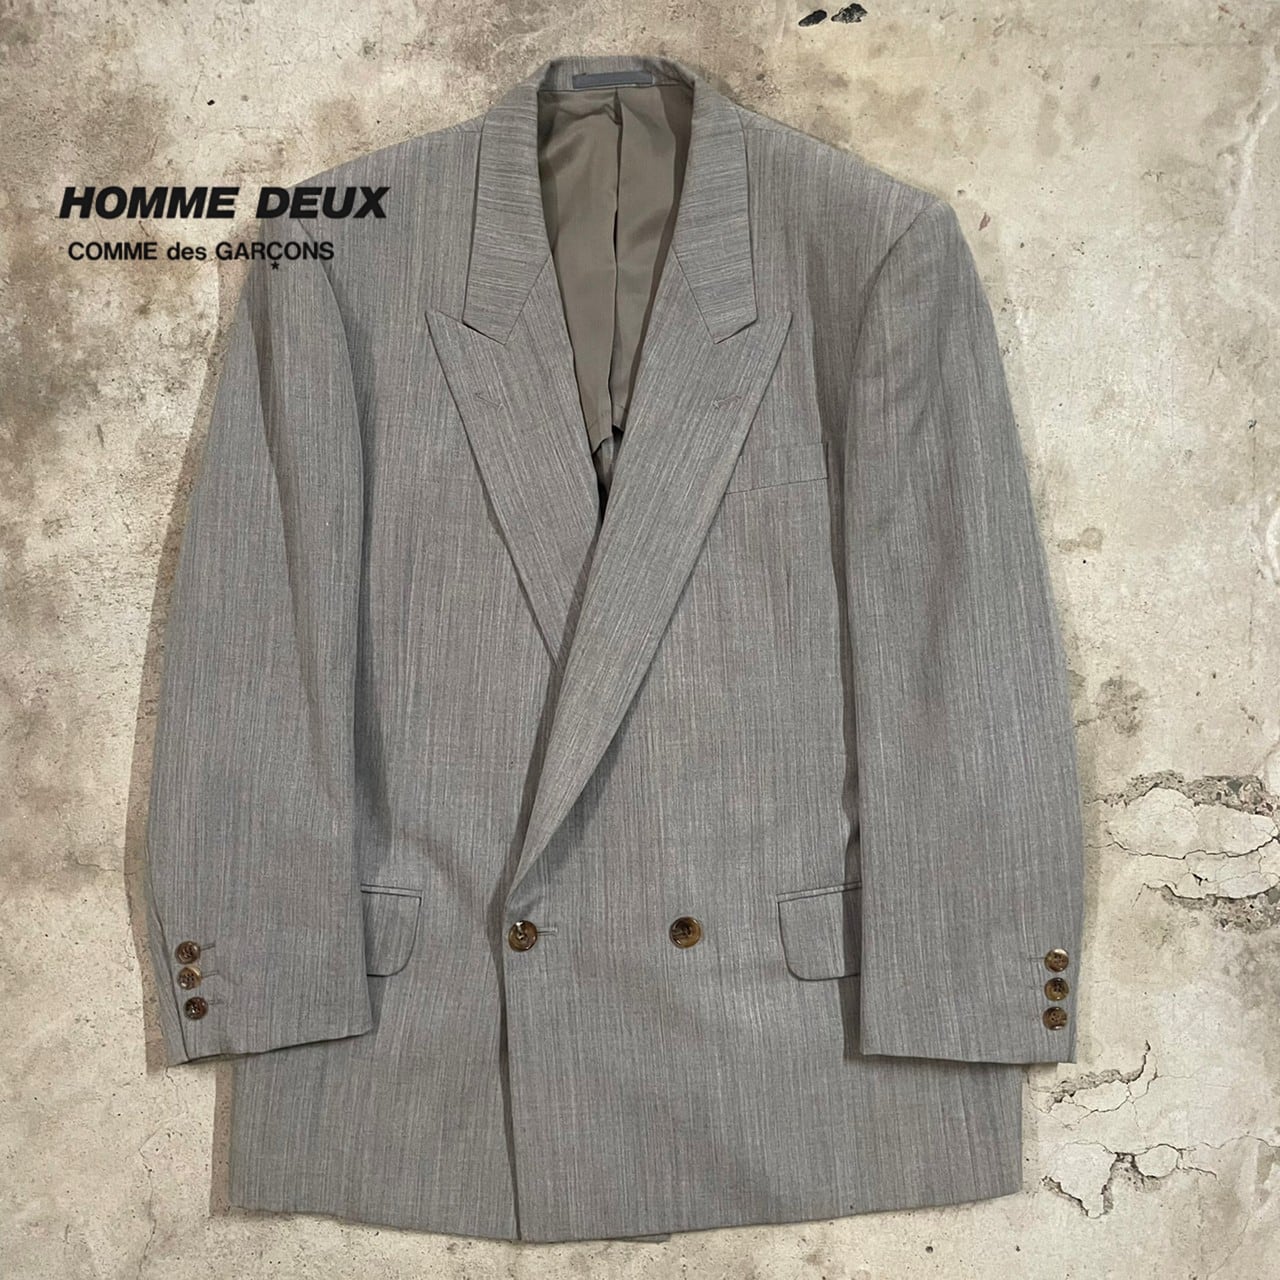 COMME des GARÇONS HOMME DEUX〗AD1989 wool double tailored jacket